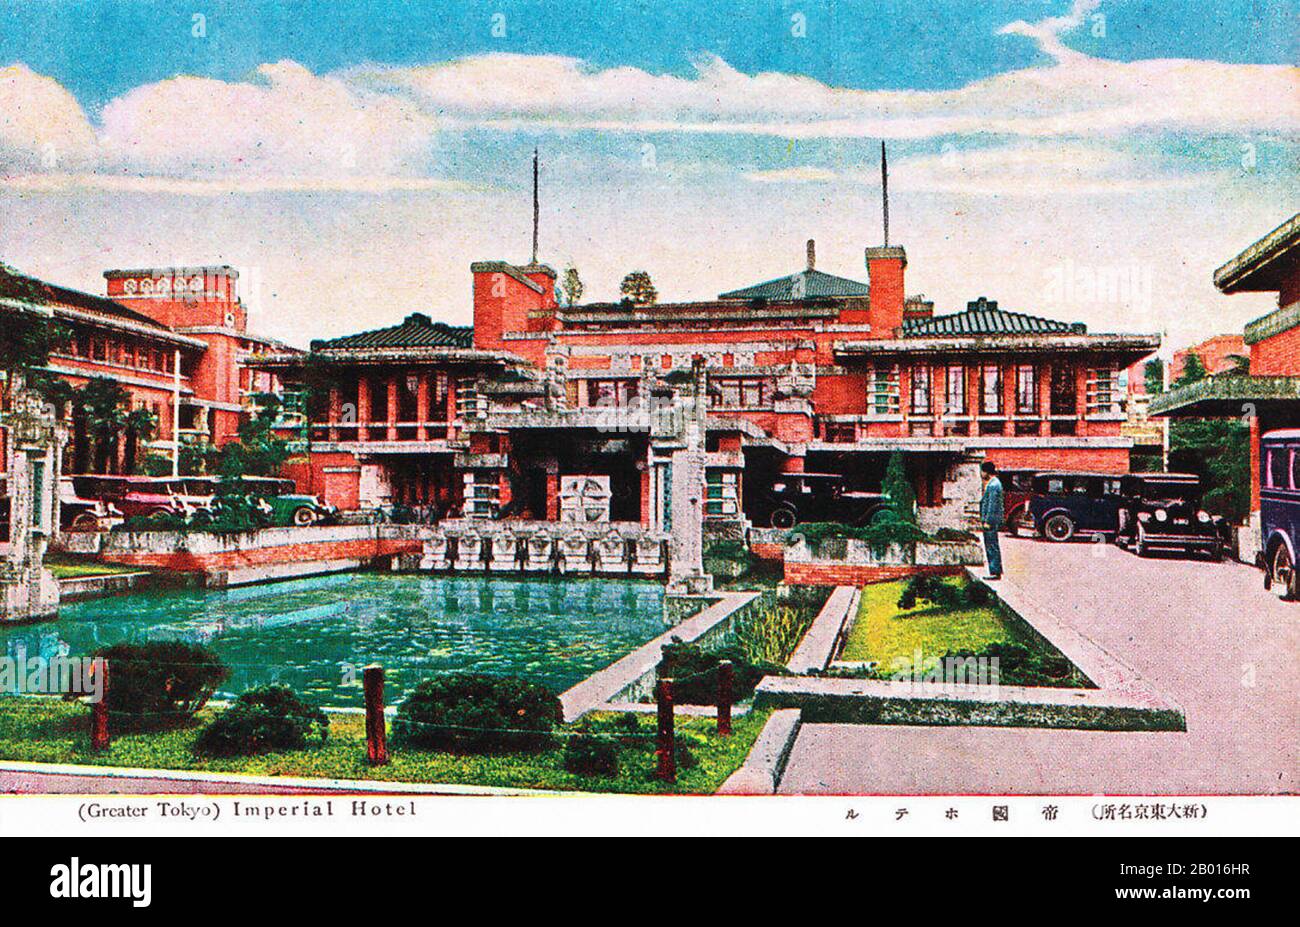 Japan: '(Great Tokyo) Imperial Hotel'. Postkarte, c. 1920. Das zweite Imperial Hotel, erbaut zwischen 1915 und 1923, war das bekannteste Gebäude von Frank Lloyd Wright in Japan. Es wurde grob in Form eines eigenen Logos gestaltet, wobei die Flügel des Gästezimmers den Buchstaben „H“ bildeten. Es überlebte das große Kanto-Erdbeben von 1923 sowie den Zweiten Weltkrieg und wurde 1968 abgerissen. Stockfoto